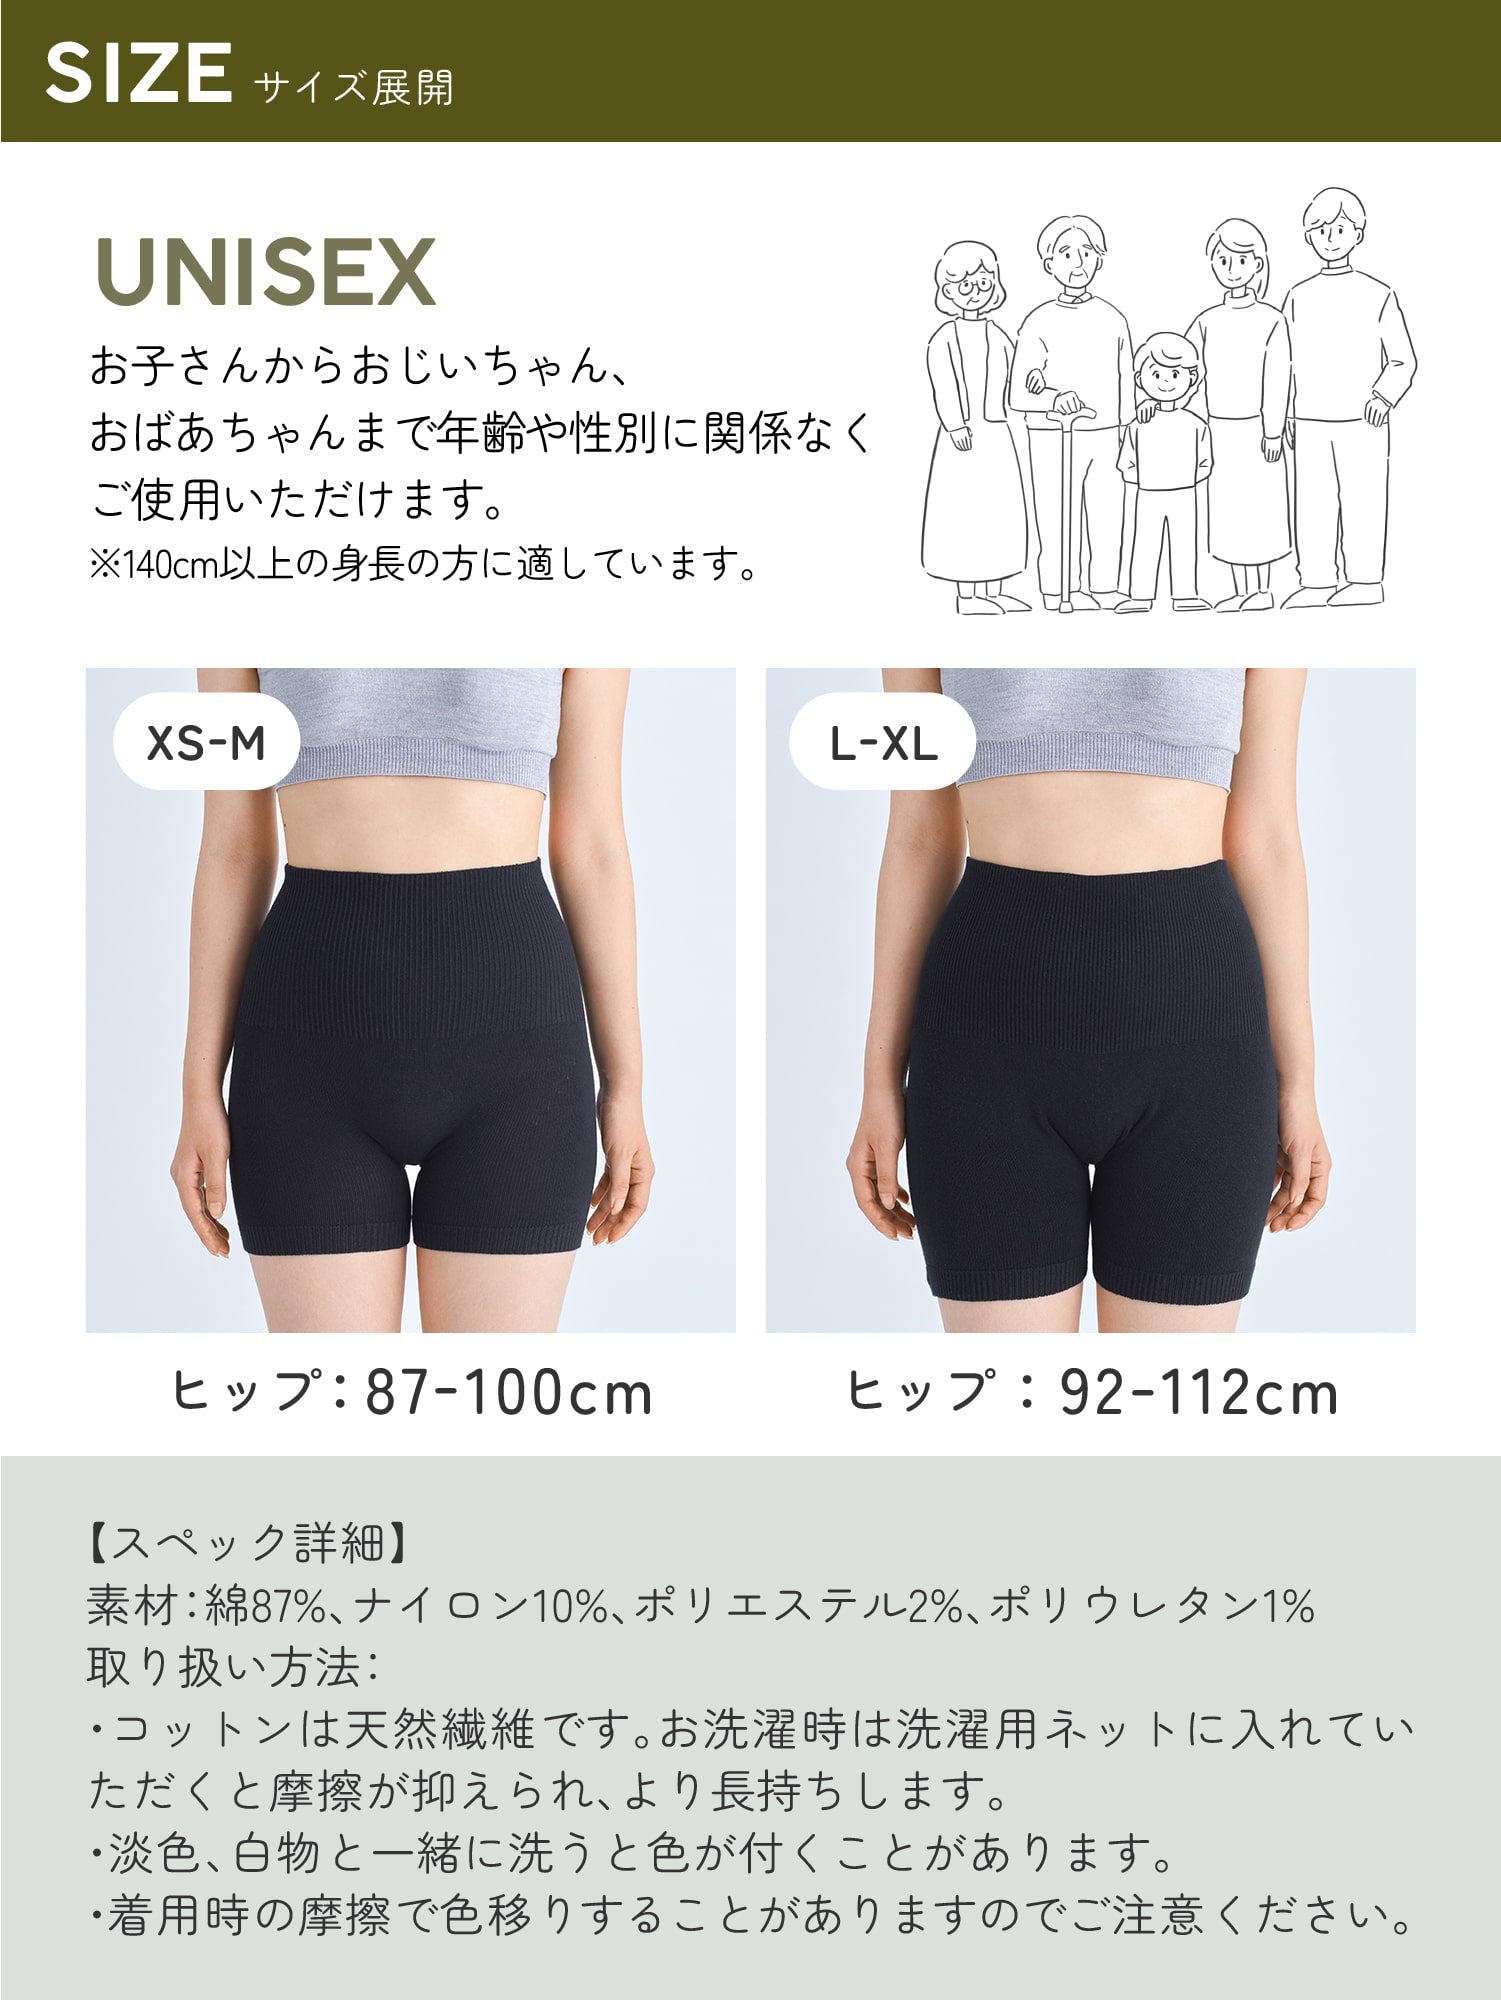 サイズ展開 UNISEX お子さんからおじいちゃん、おばあちゃんまで年齢や性別に関係なくご使用いただけます。※140cm以上の身長の方に適しています。